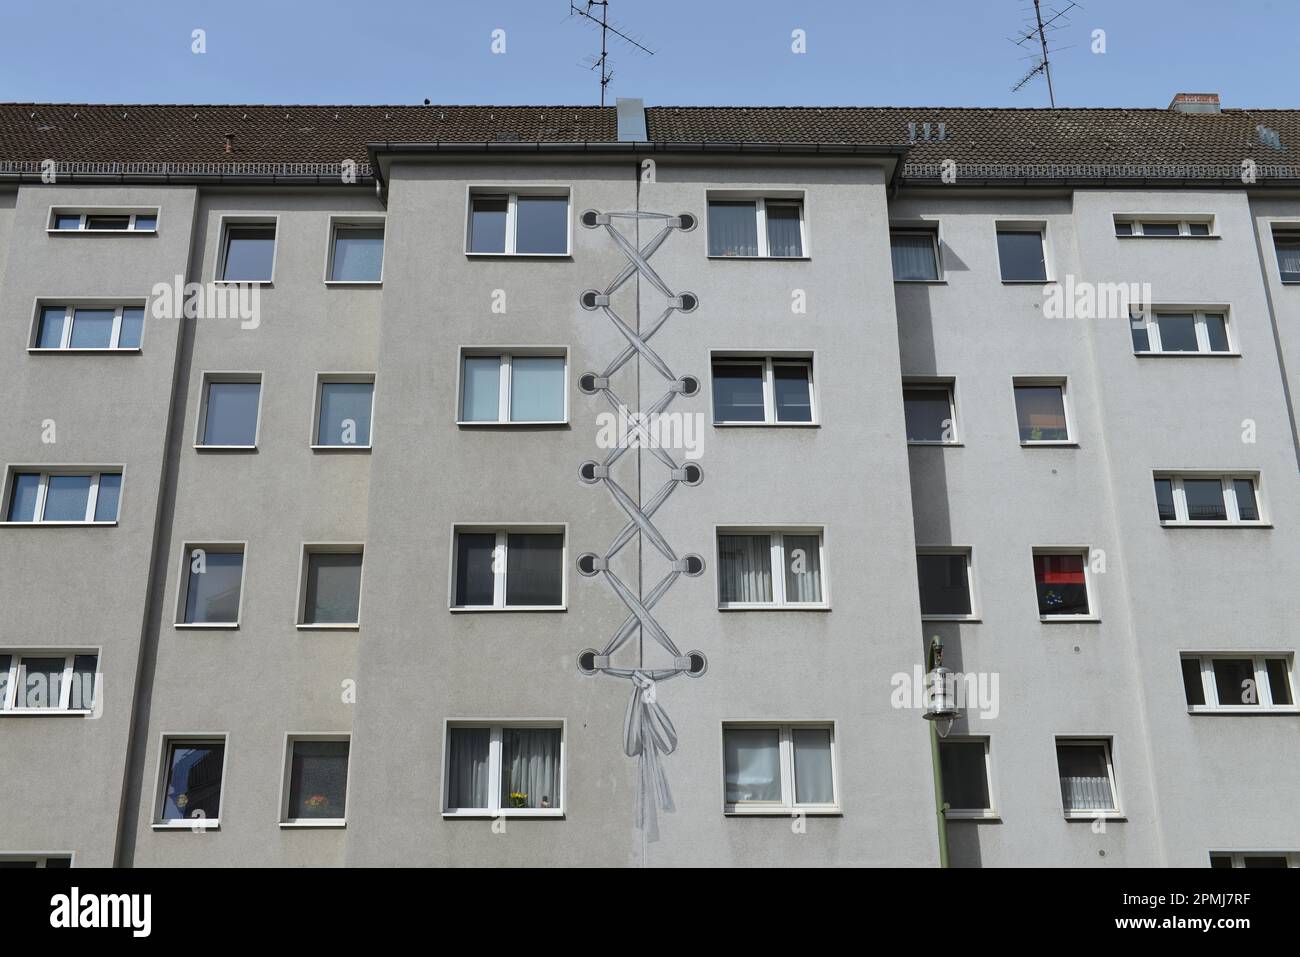 Maison résidentielle, peinture de maison, Kaerntener Strasse, Schoeneberg, Berlin, Allemagne Banque D'Images